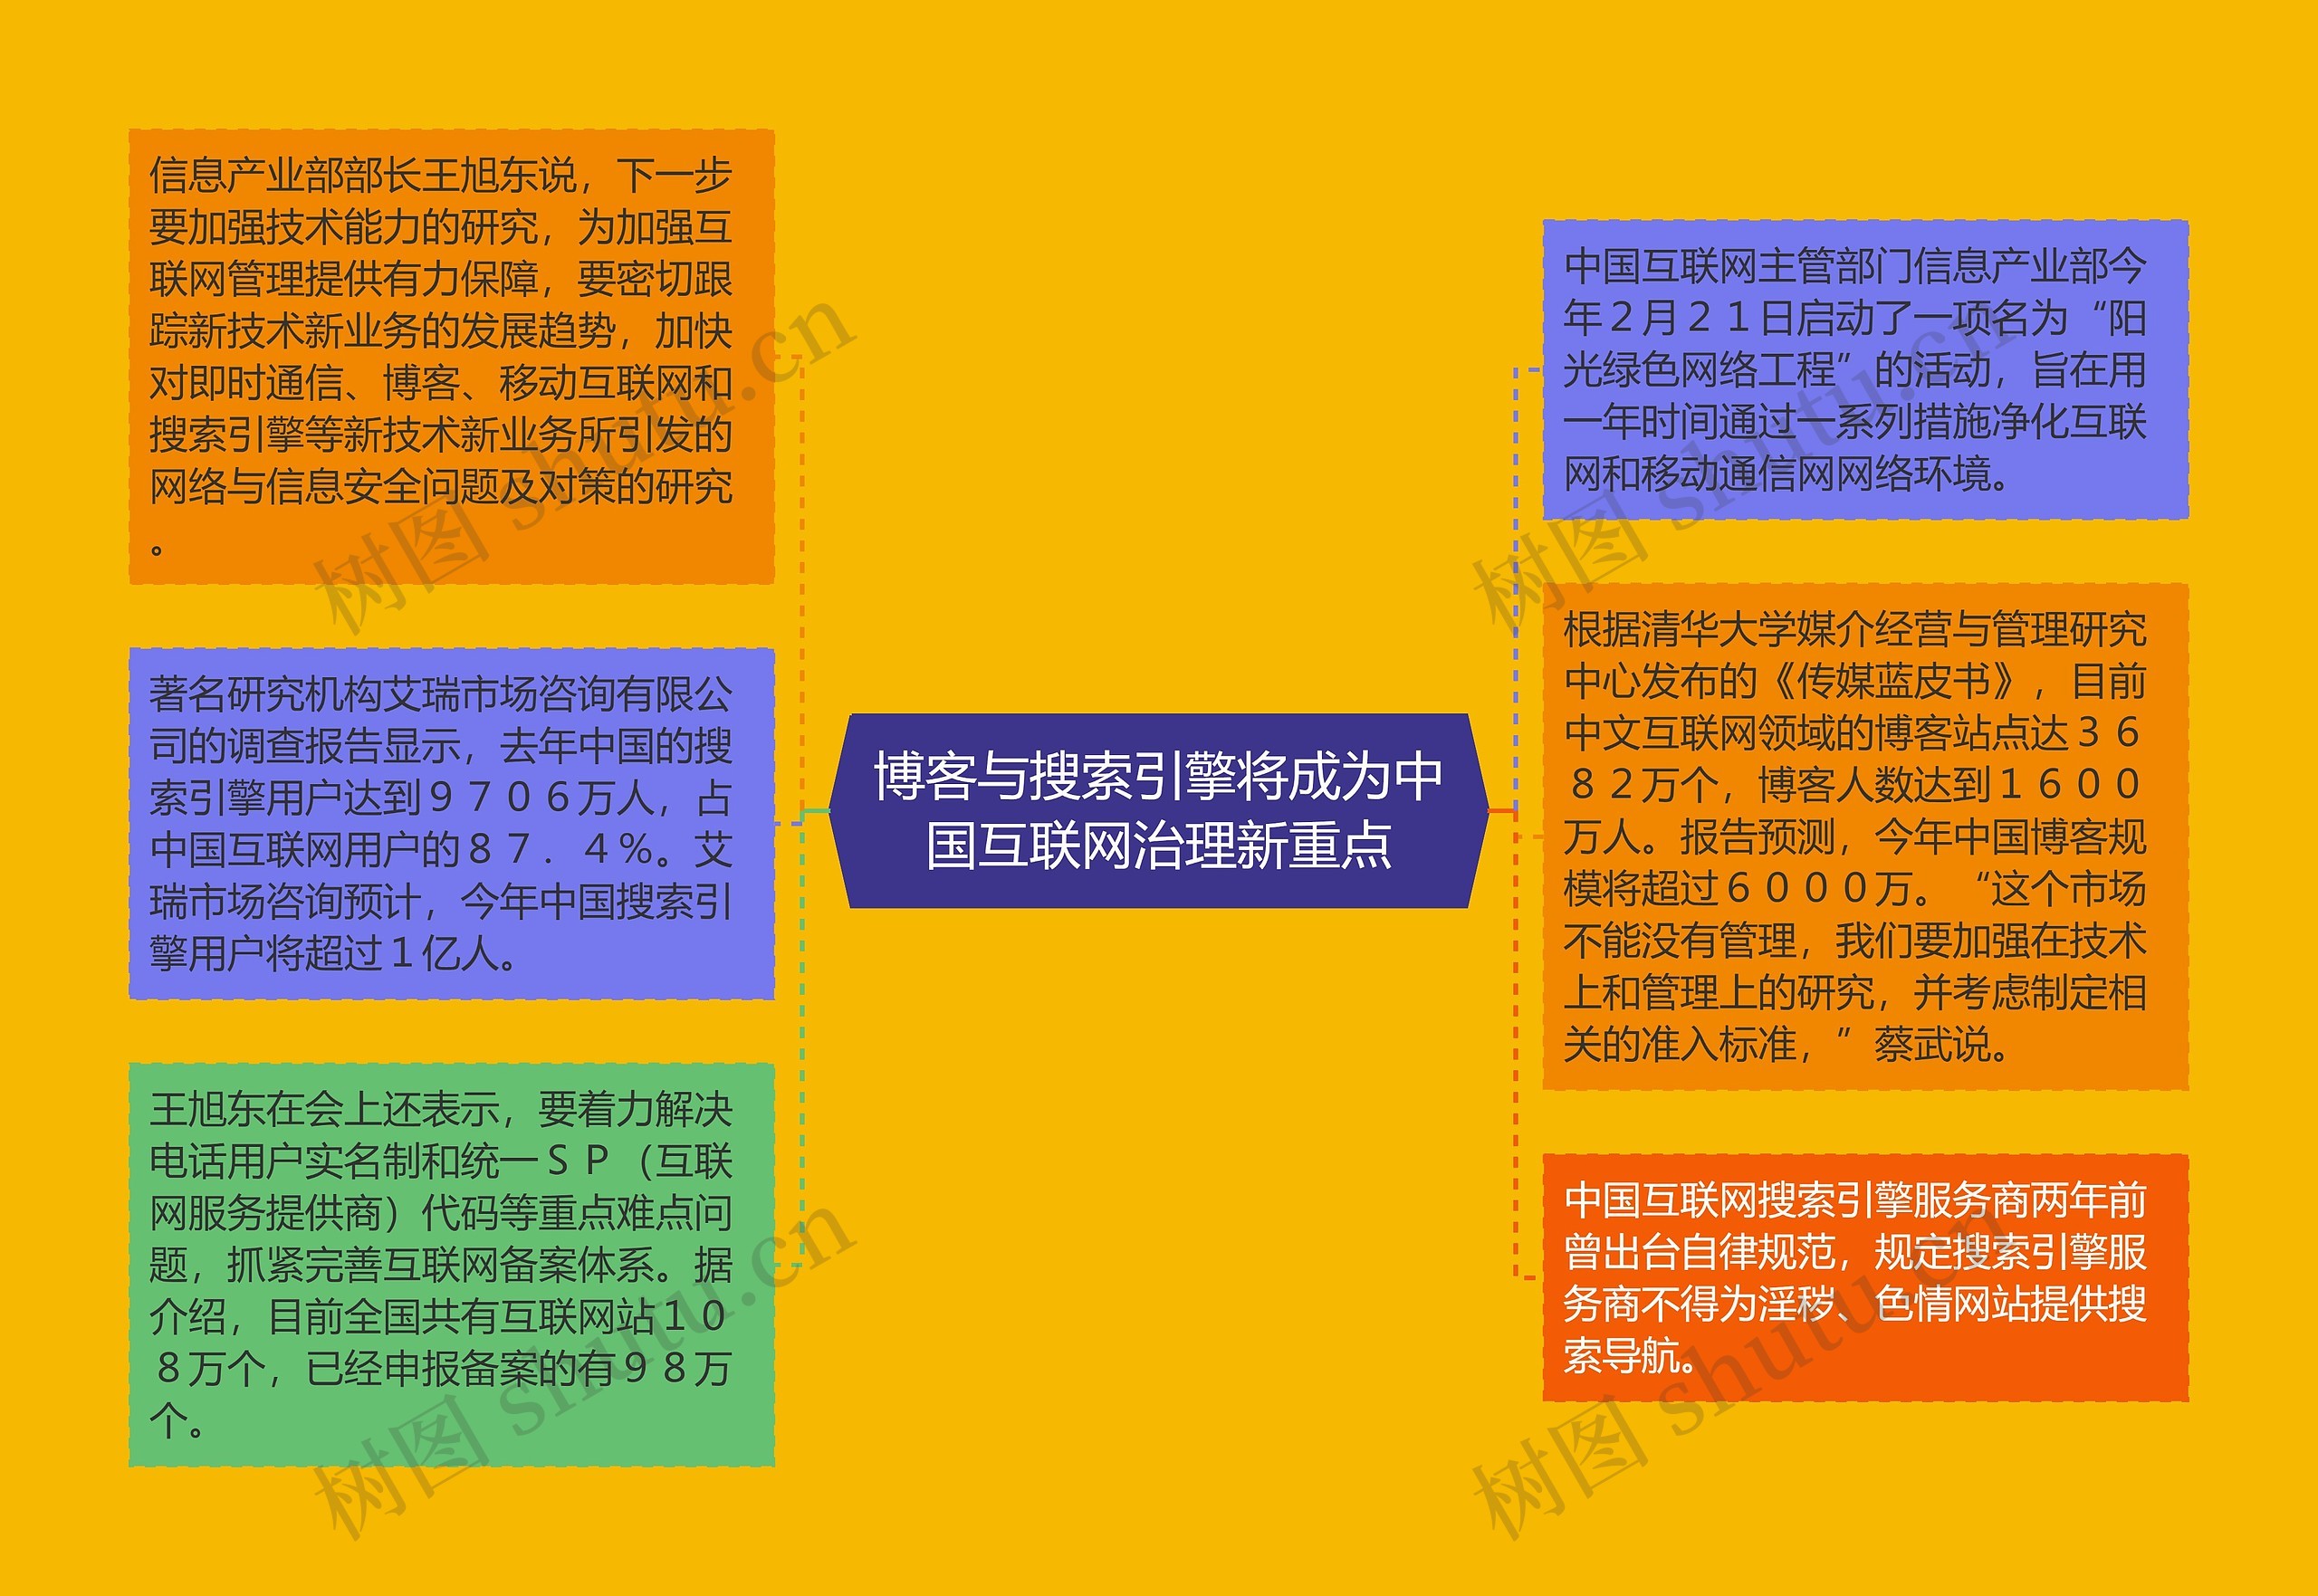 博客与搜索引擎将成为中国互联网治理新重点